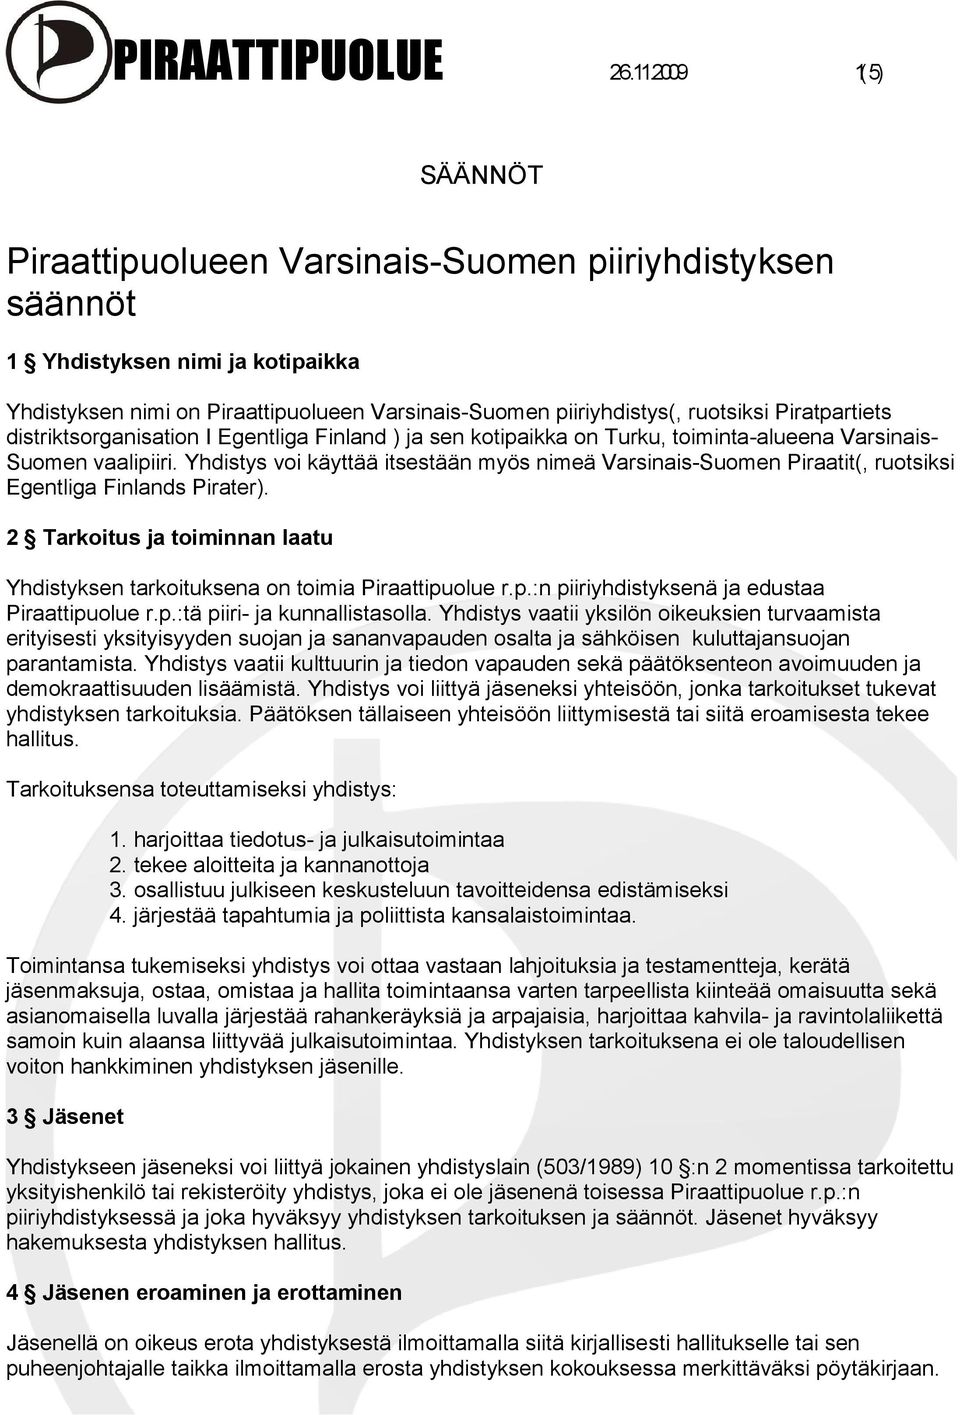 Piratpartiets distriktsorganisation I Egentliga Finland ) ja sen kotipaikka on Turku, toiminta-alueena Varsinais- Suomen vaalipiiri.